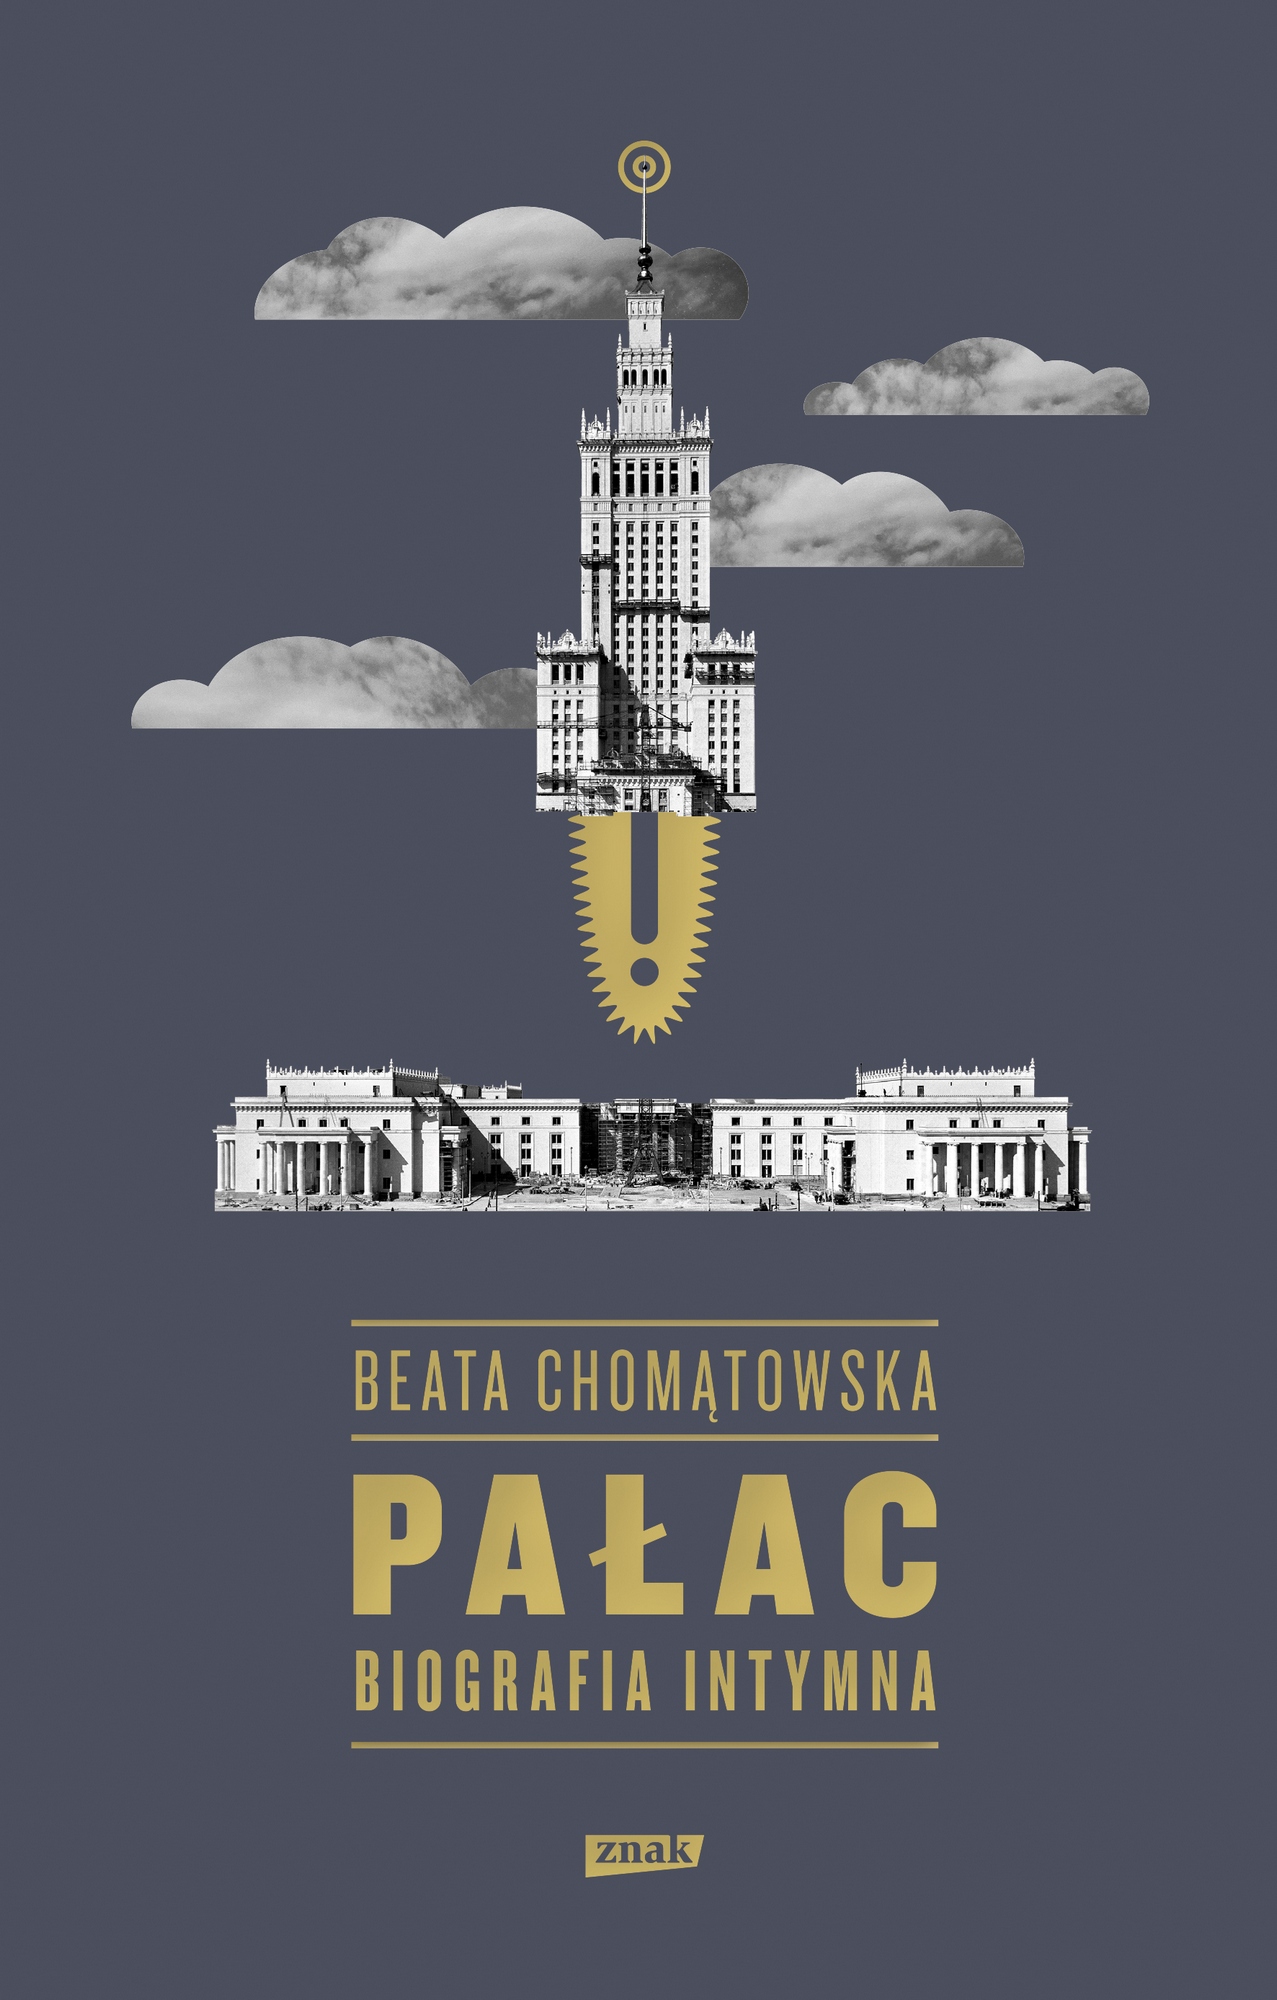 Beata Chomątowska, „Pałac. Biografia intymna” – okładka (źródło: materiały prasowe wydawcy)